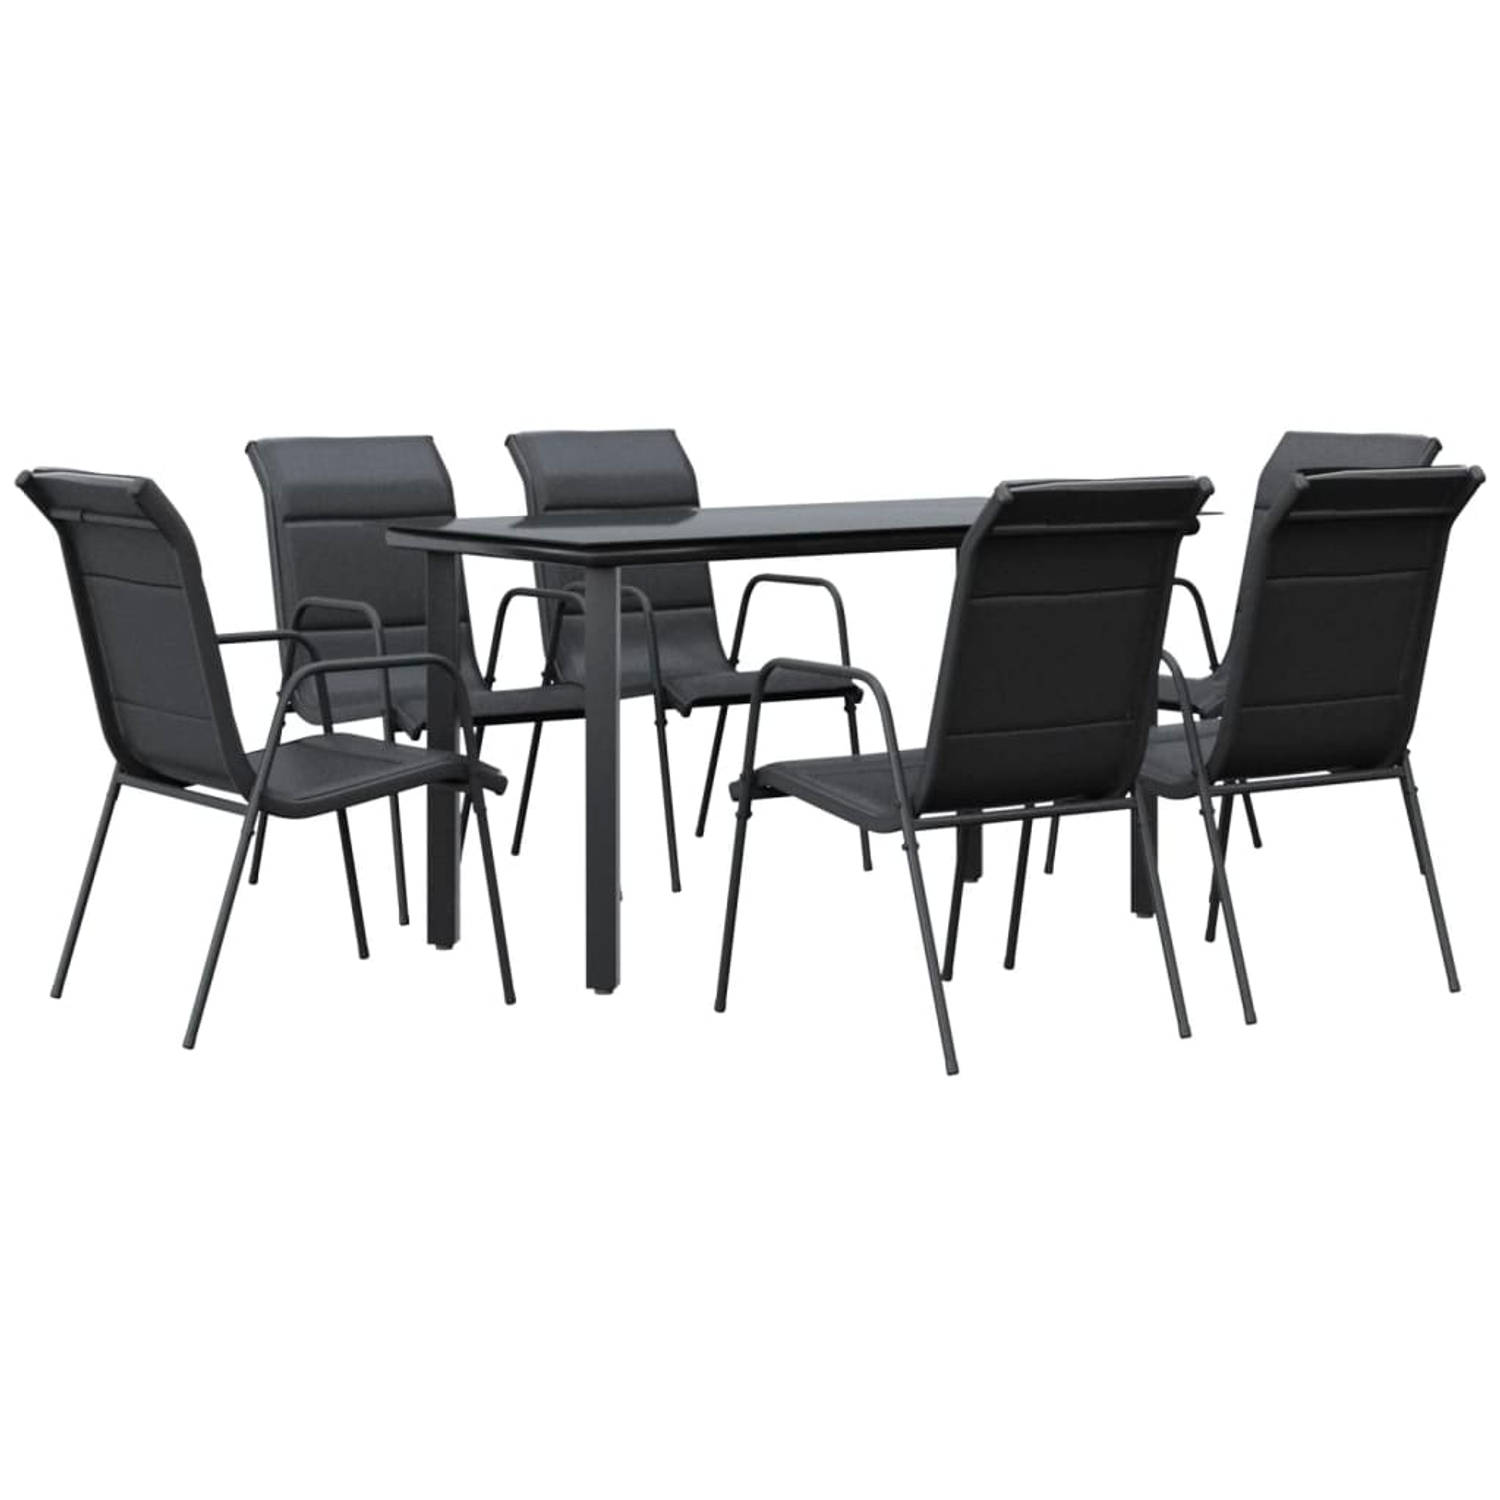 The Living Store Tuinset - Stabiel frame - Duurzaam materiaal - Stevig tafelblad - Comfortabele zitervaring - Incl - 6 stoelen - Afmetingen tafel- 140x70x74cm - Afmetingen stoel- 5